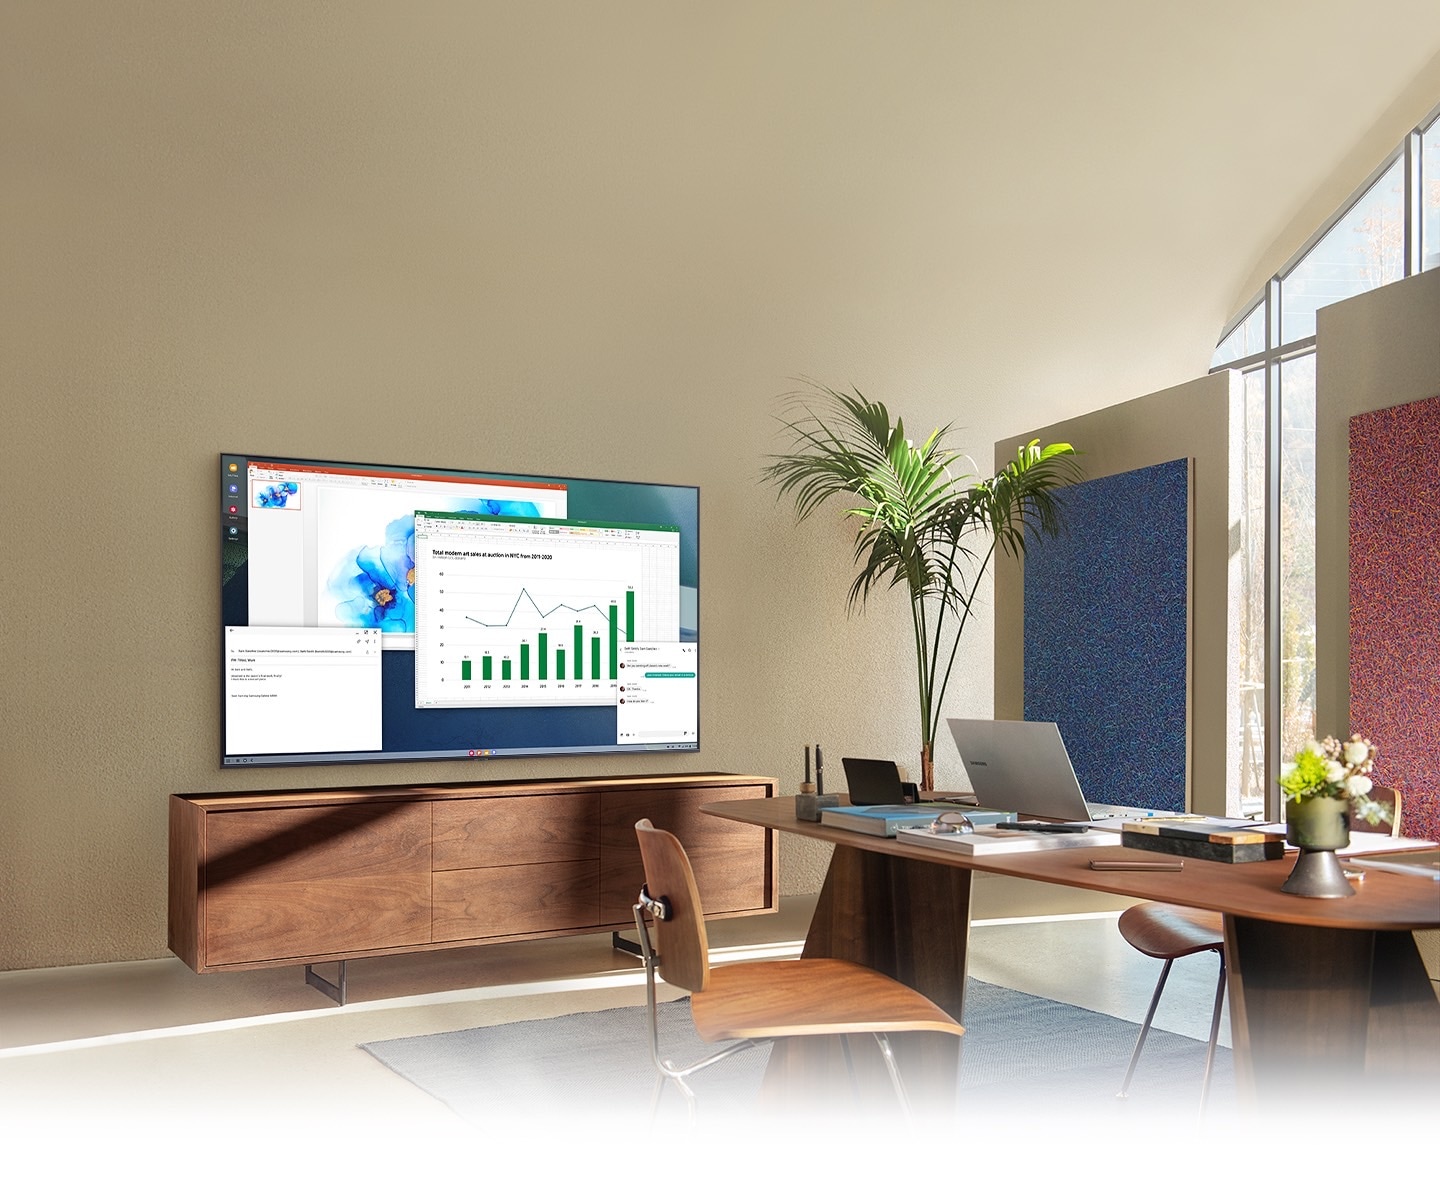 في مكتب منزلي بغرفة المعيشة، تعرض شاشة التلفزيون ميزة الكمبيوتر الشخصي على التلفزيون والتي تسمح للتلفزيون المنزلي بالاتصال بجهاز الكمبيوتر المكتبي.